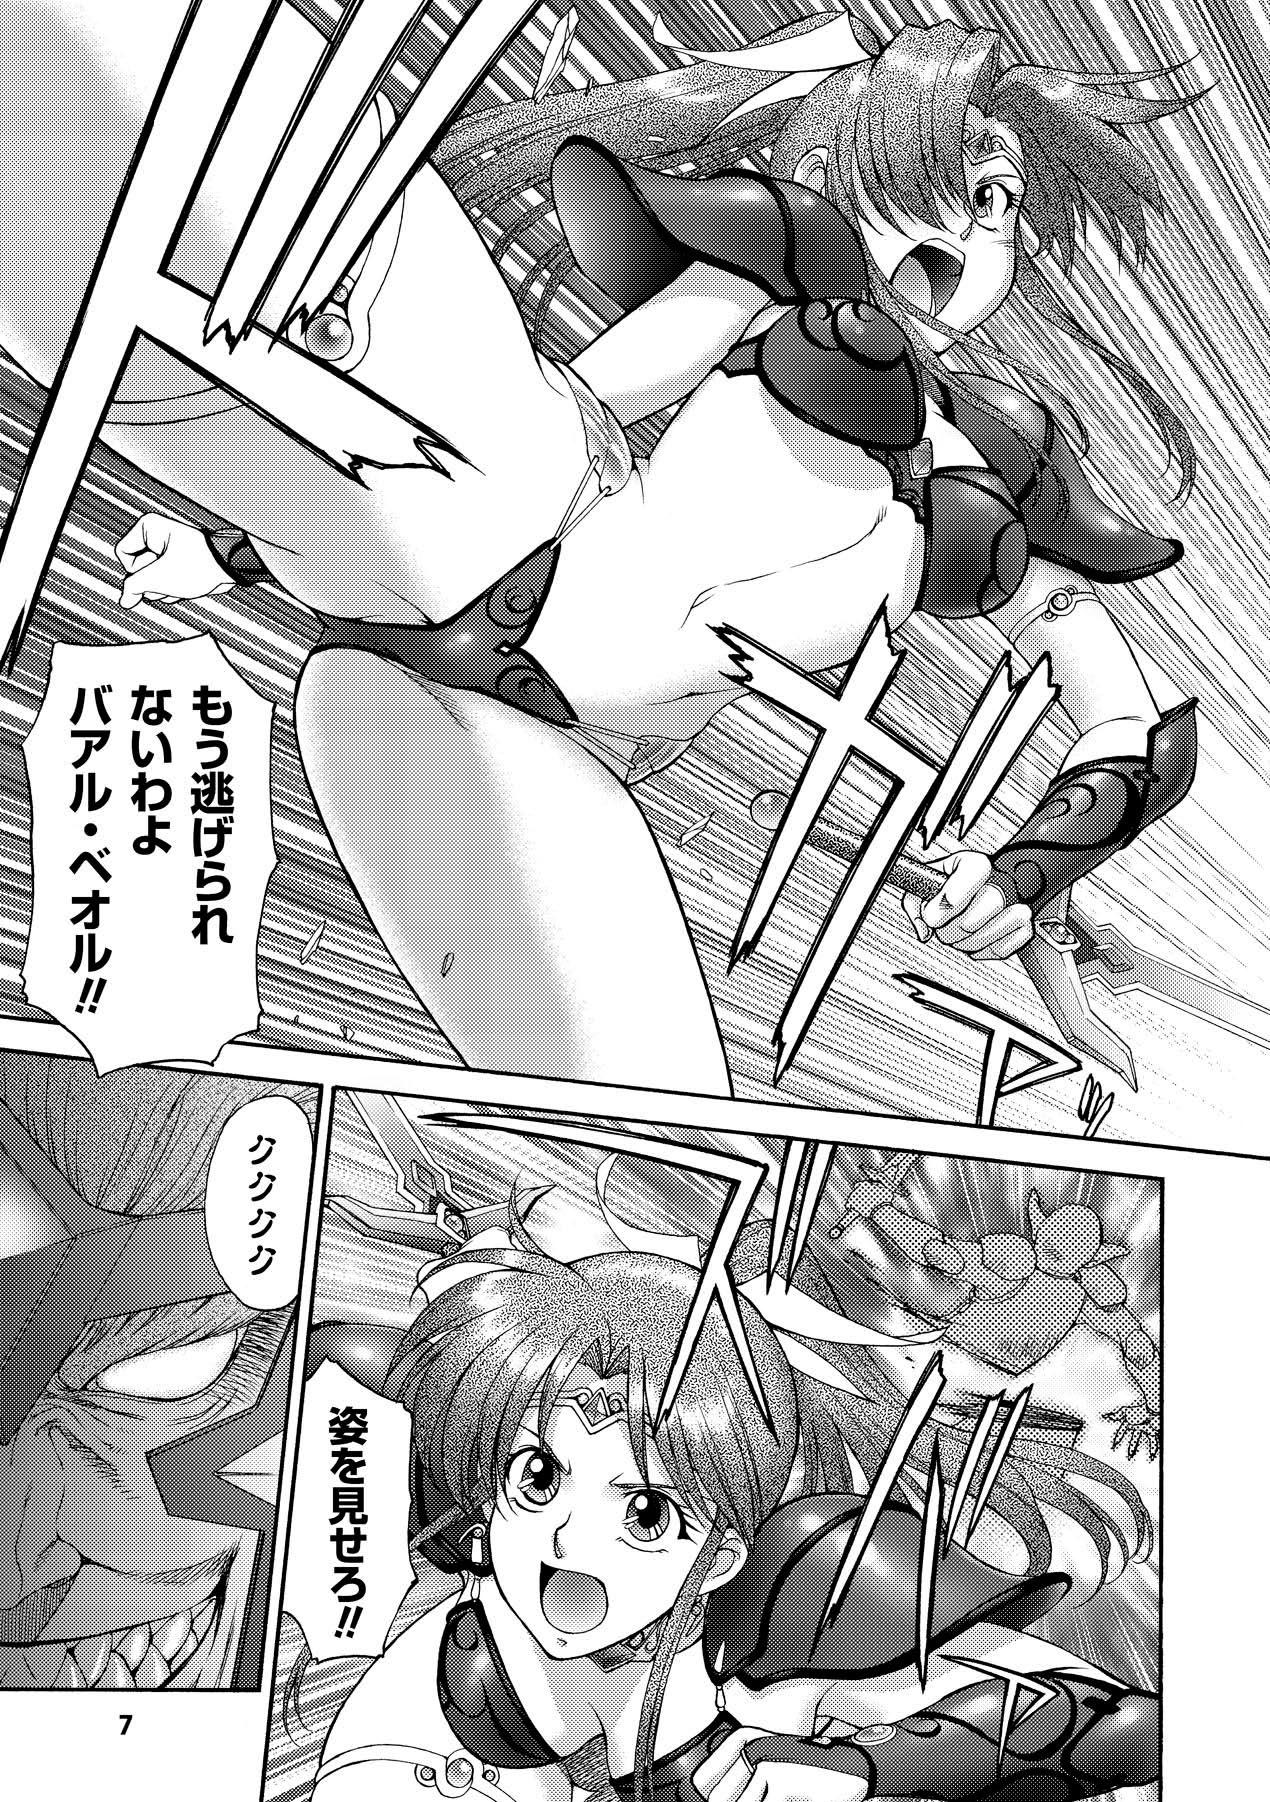 Perfect Tits FIGHTING BEAUTY - Genmu senki leda Leather - Page 7